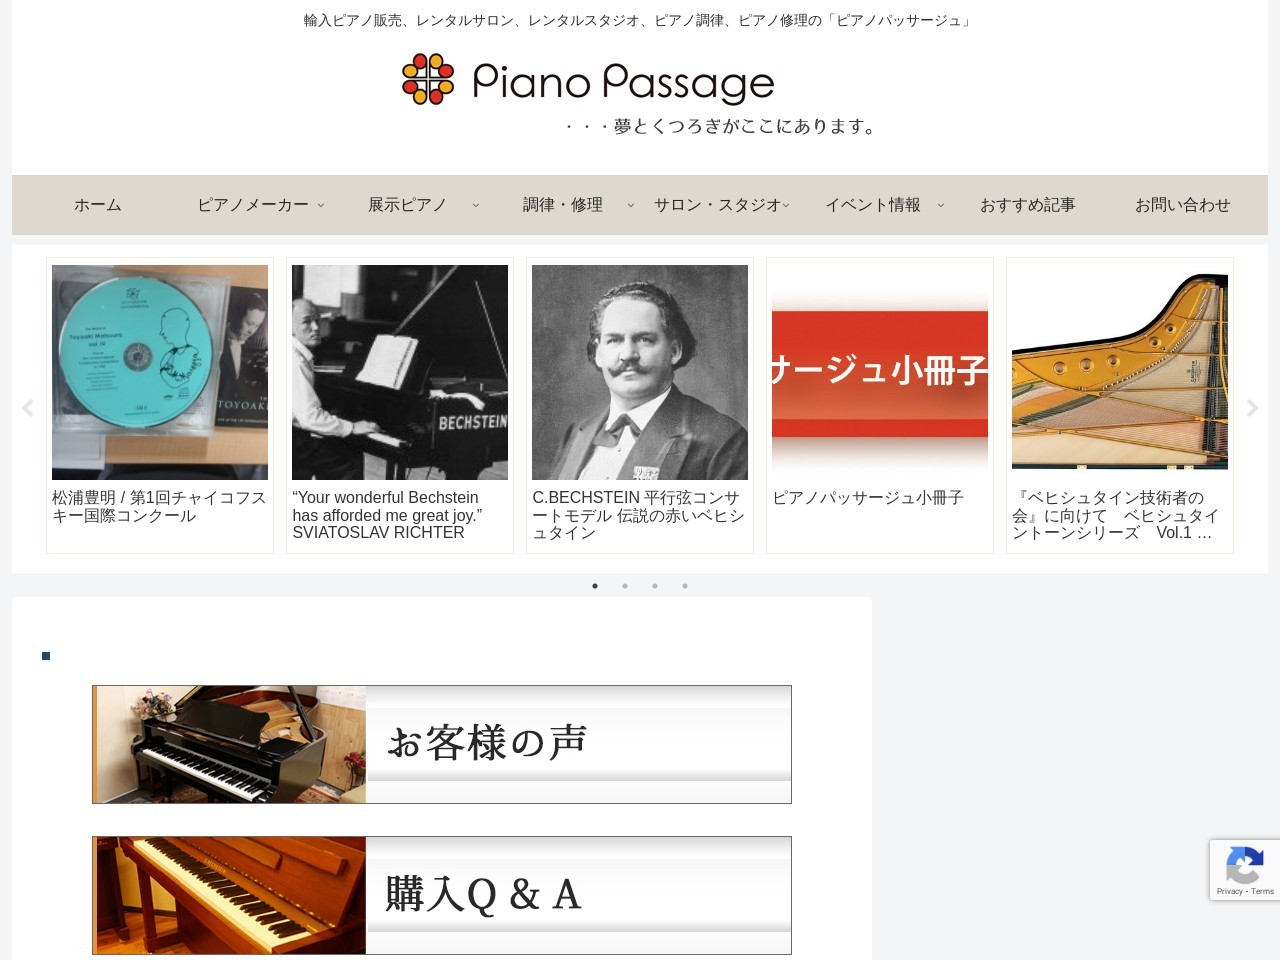 ピアノパッサージュ株式会社